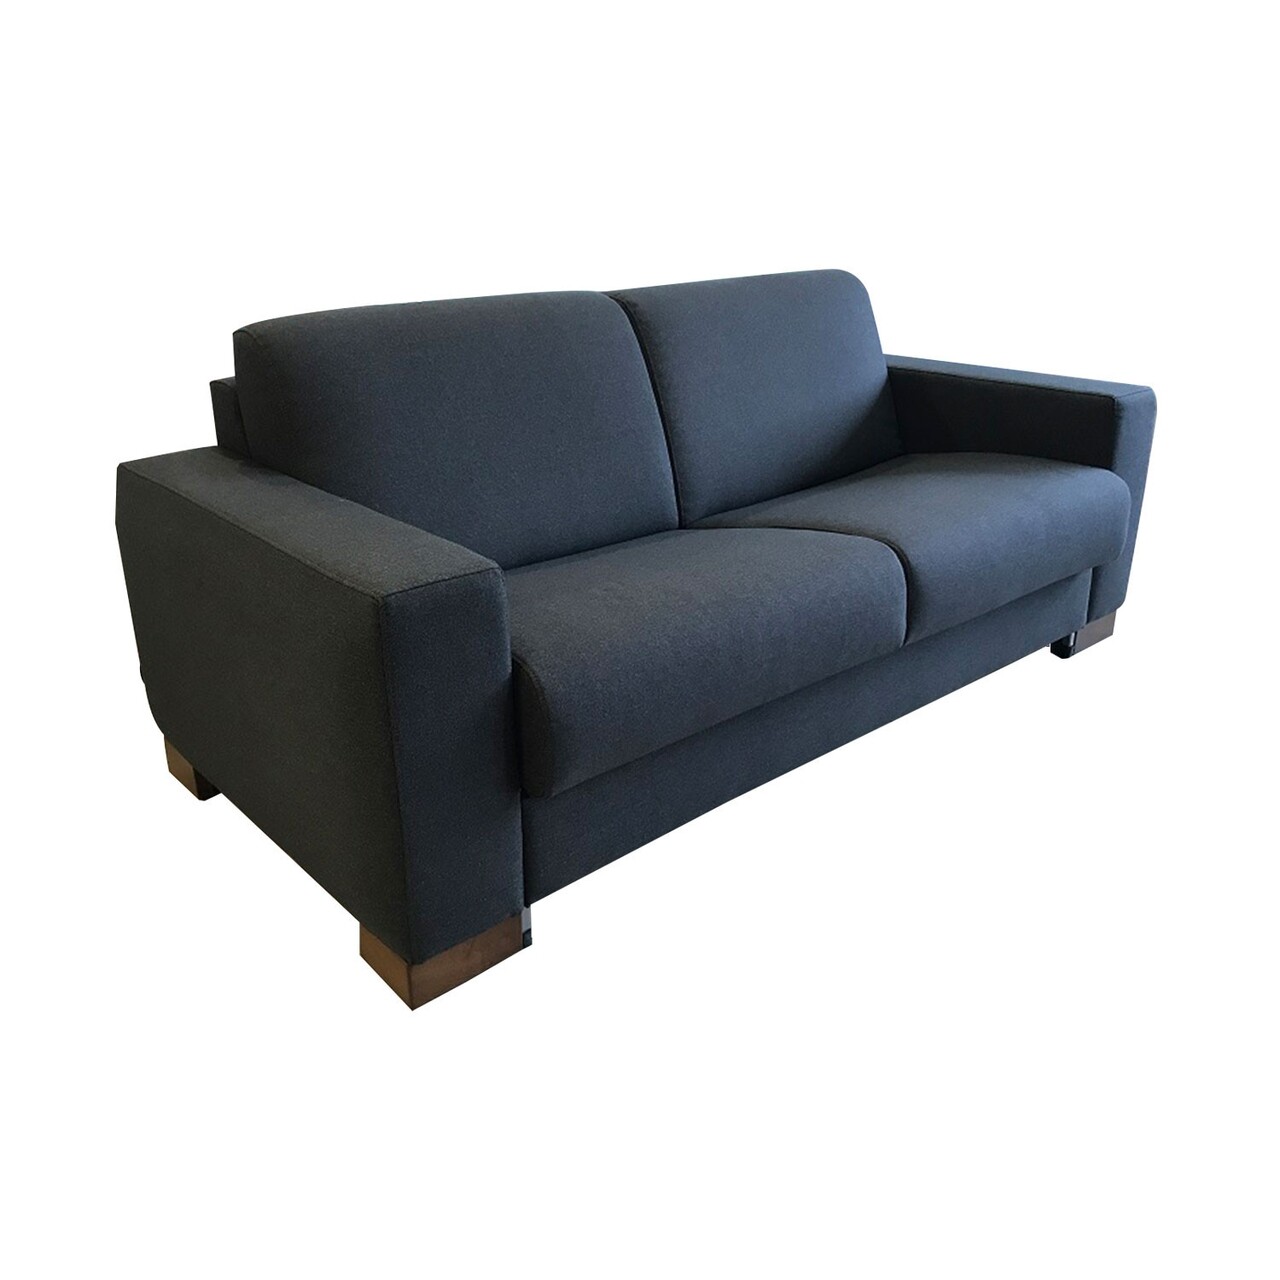 Kansas kihúzható kanapé, ndesign, 3 személyes, 200x98x98 cm, fa, fekete